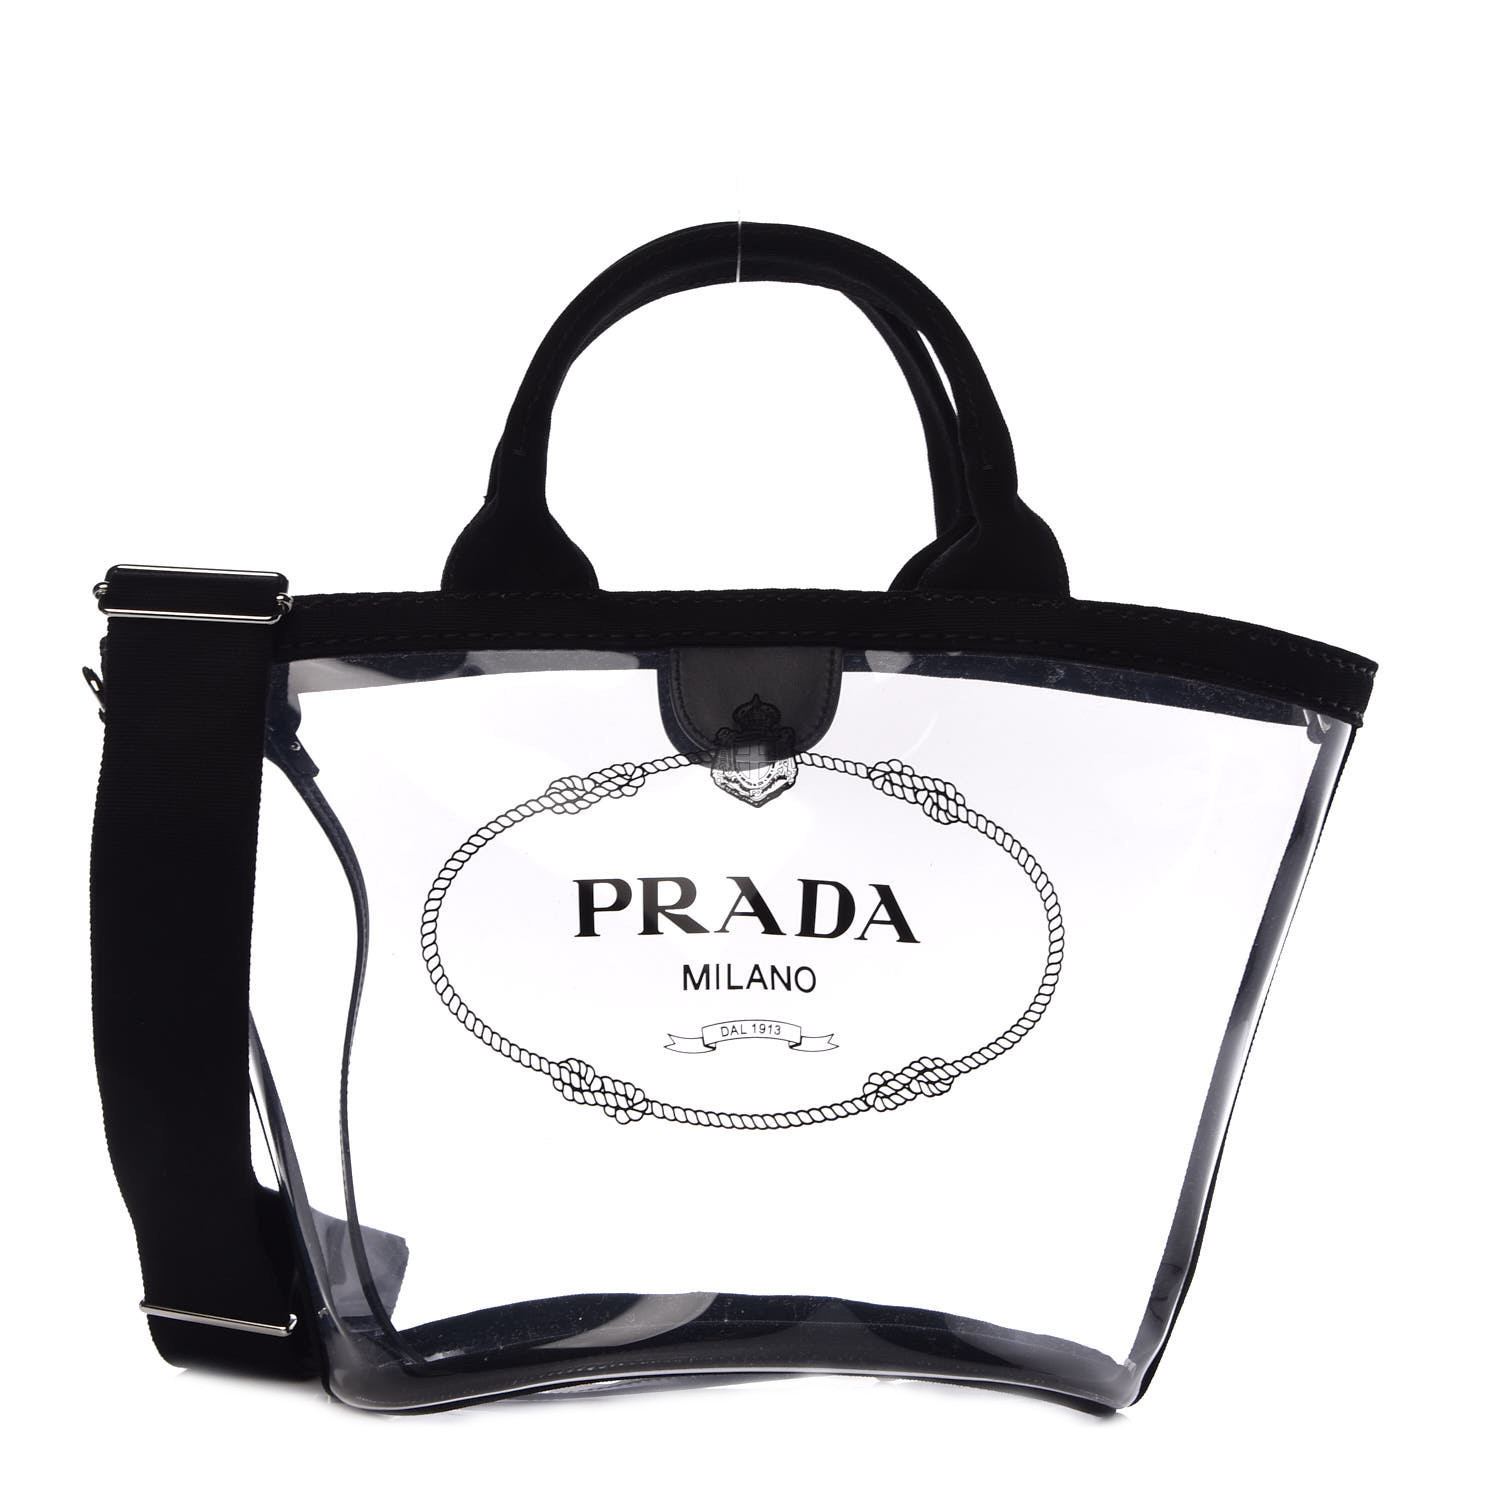 PRADA Plexiglass Canapa Small Shopper Tote Black 357197 | FASHIONPHILE